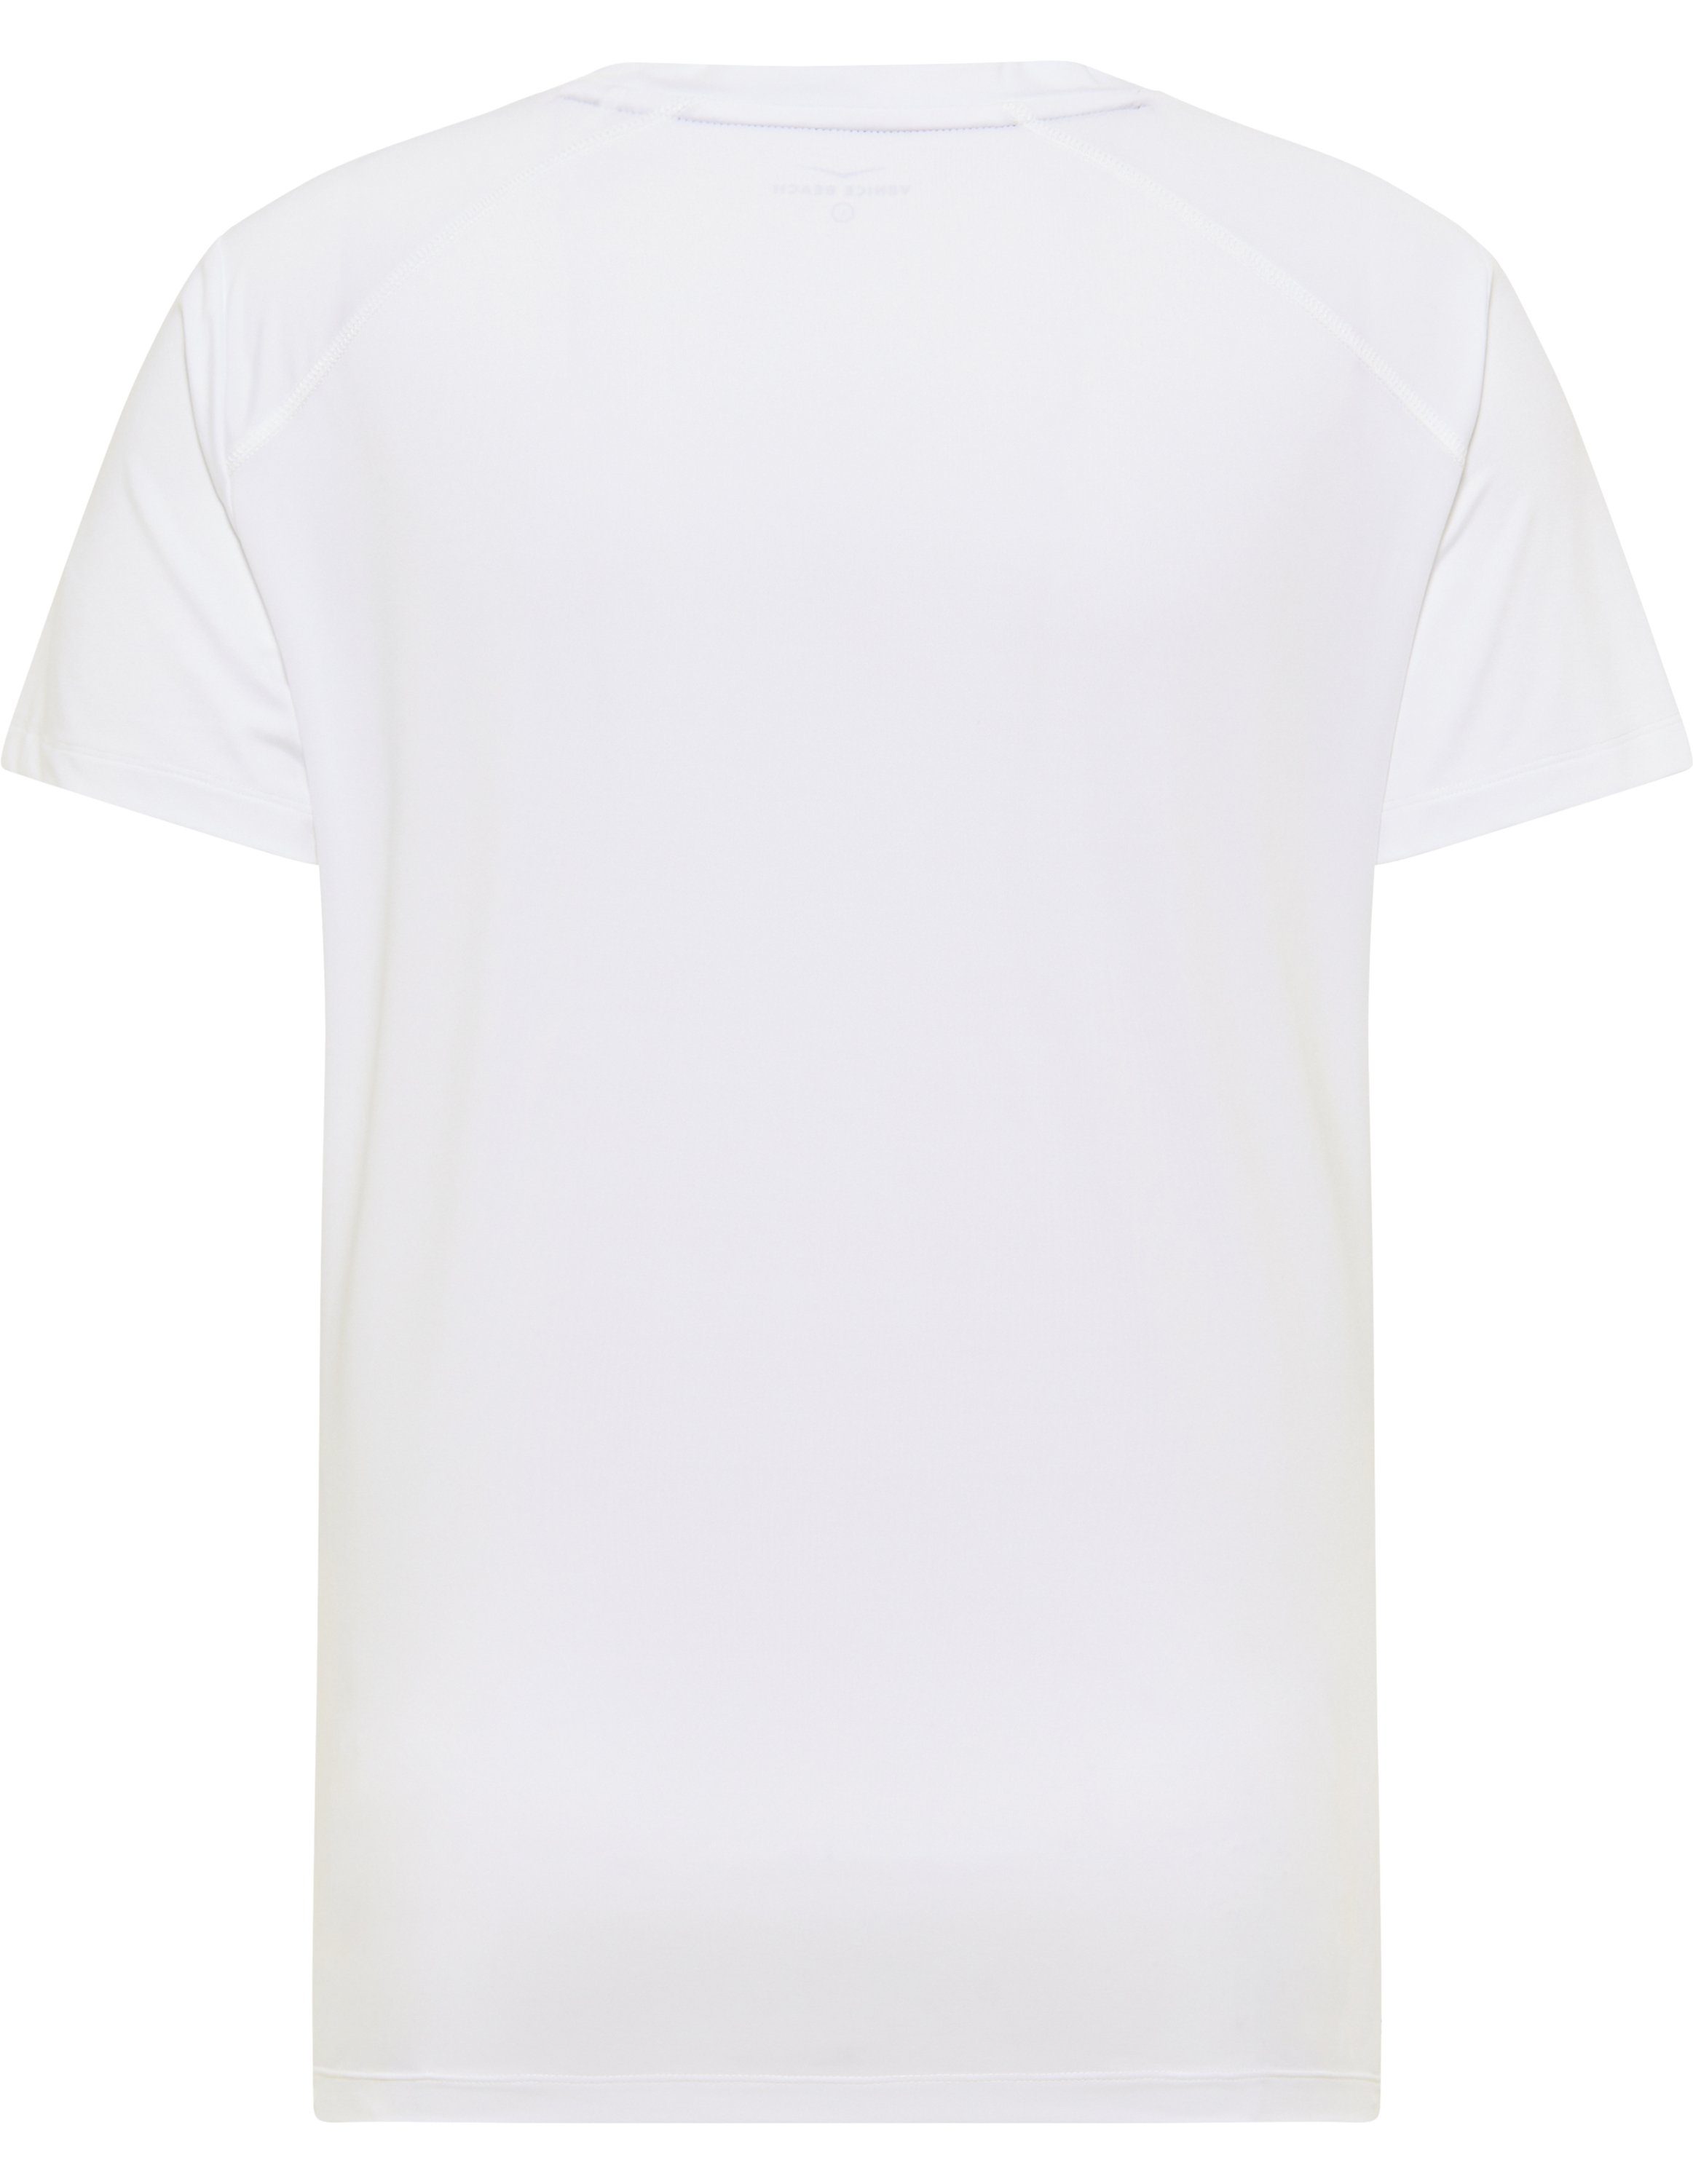 T-Shirt white Venice Beach VB T-Shirt Men HAYES